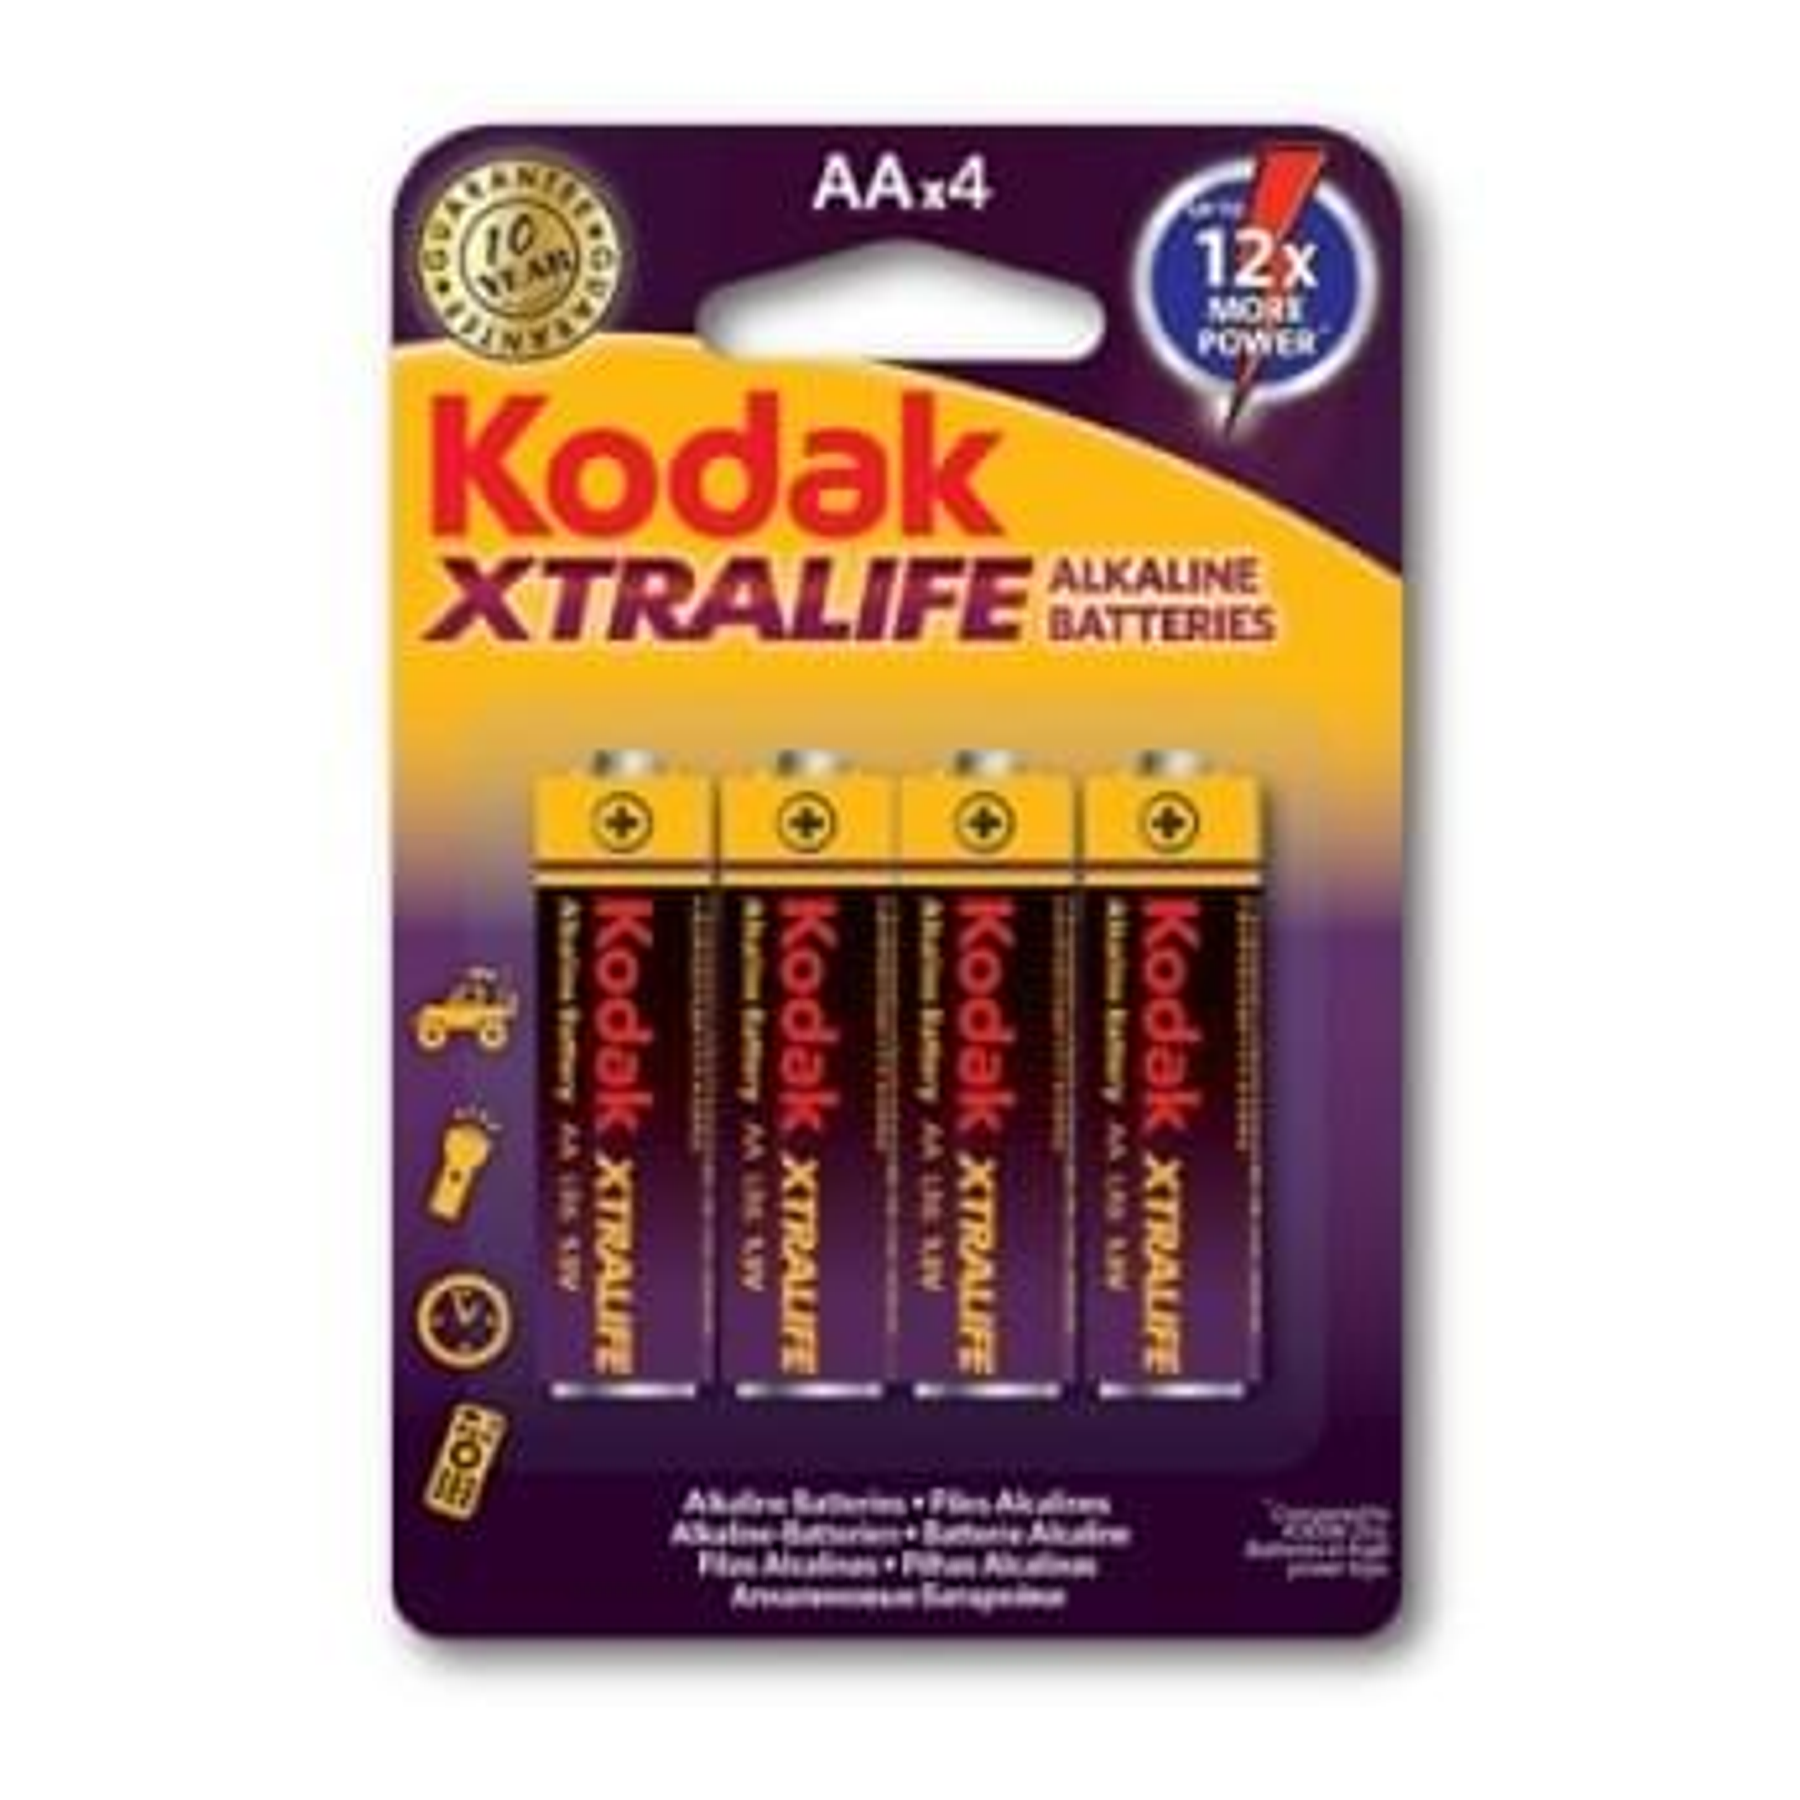 Pilhas Kodak Xtralife Alcalina LR6 AA (4)